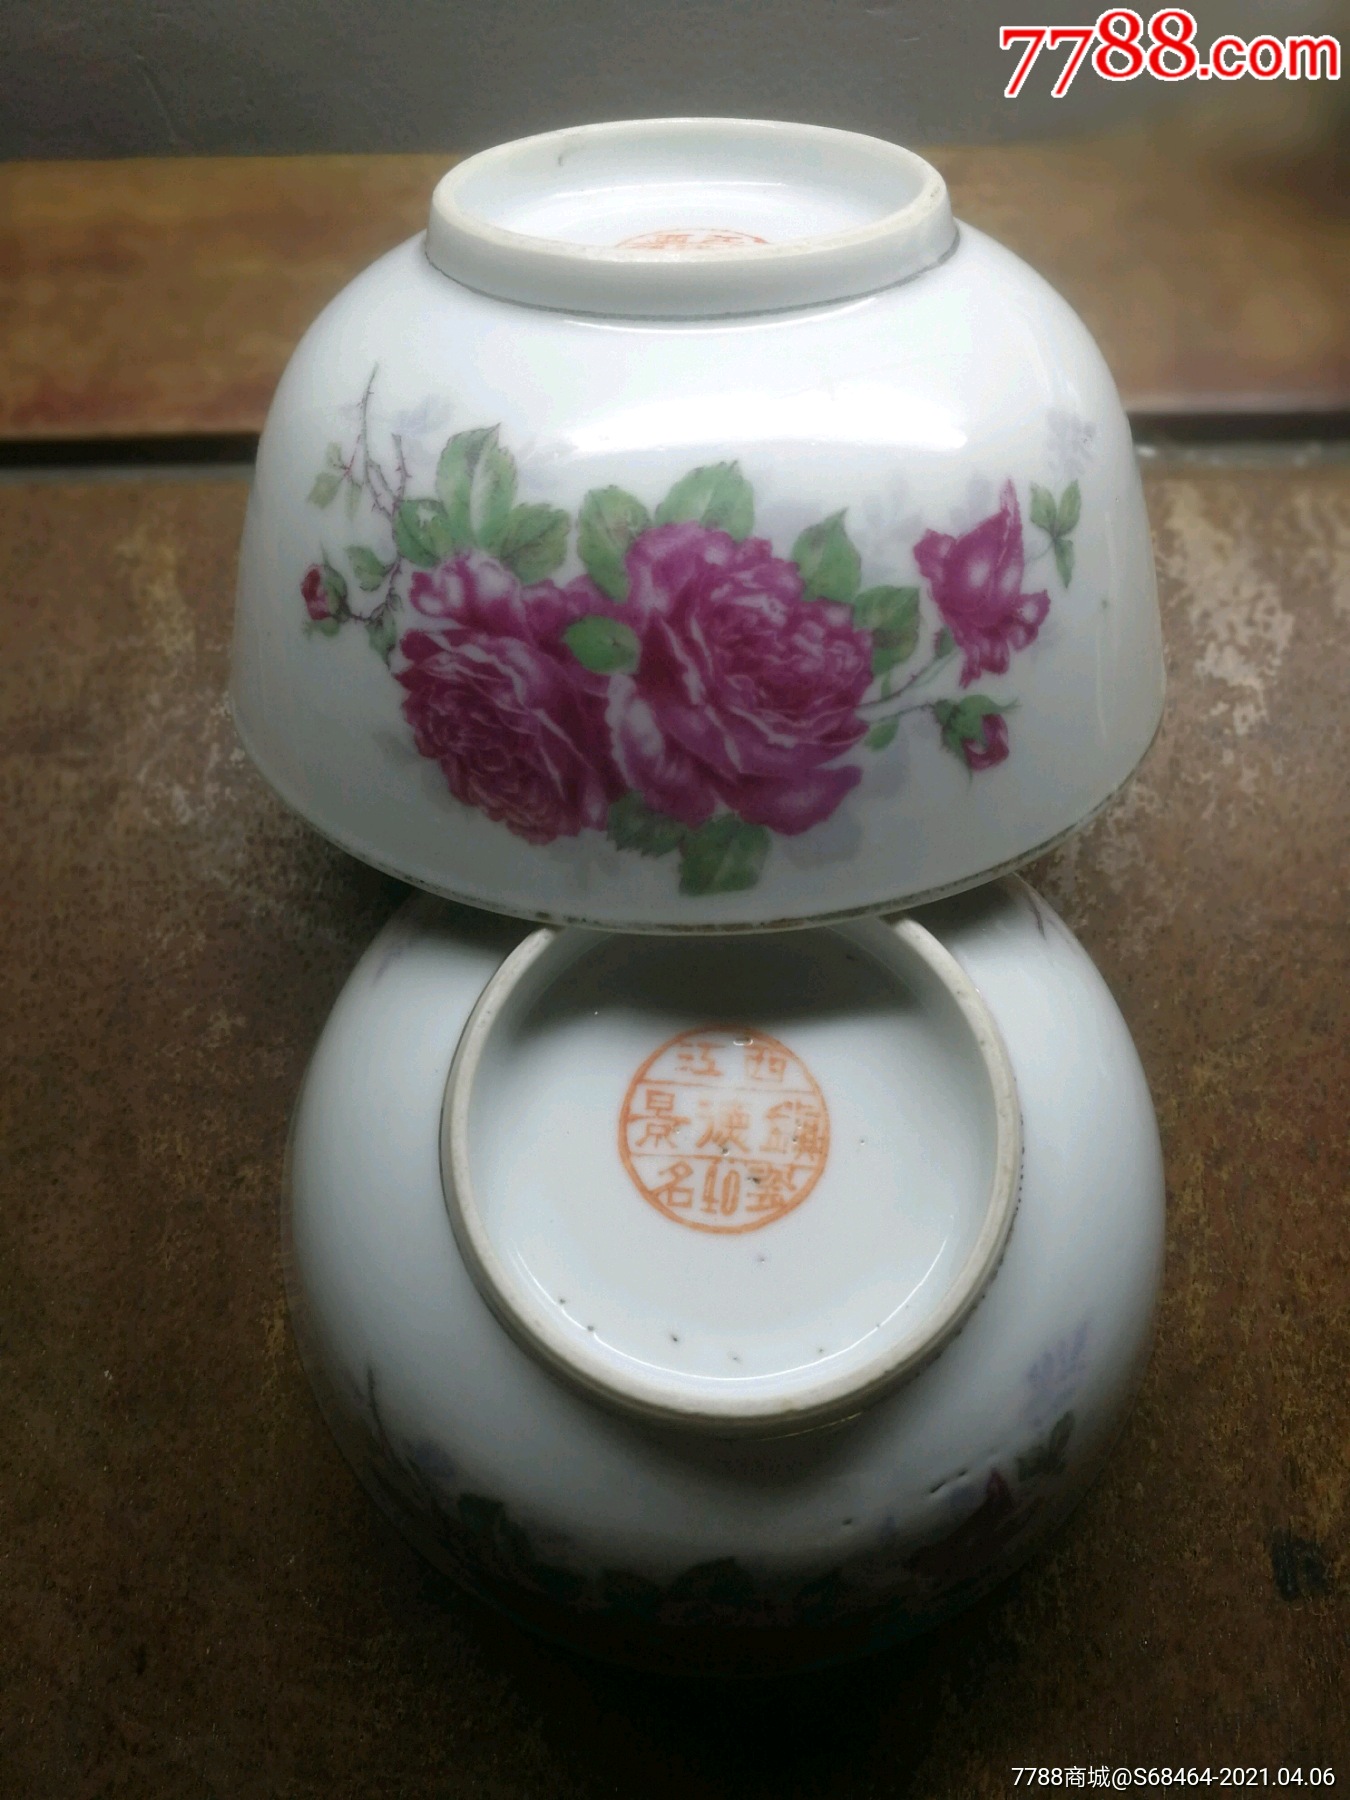 解放初期或民国江西景德镇名瓷底款口径11.6厘米金边花卉彩绘碗2个